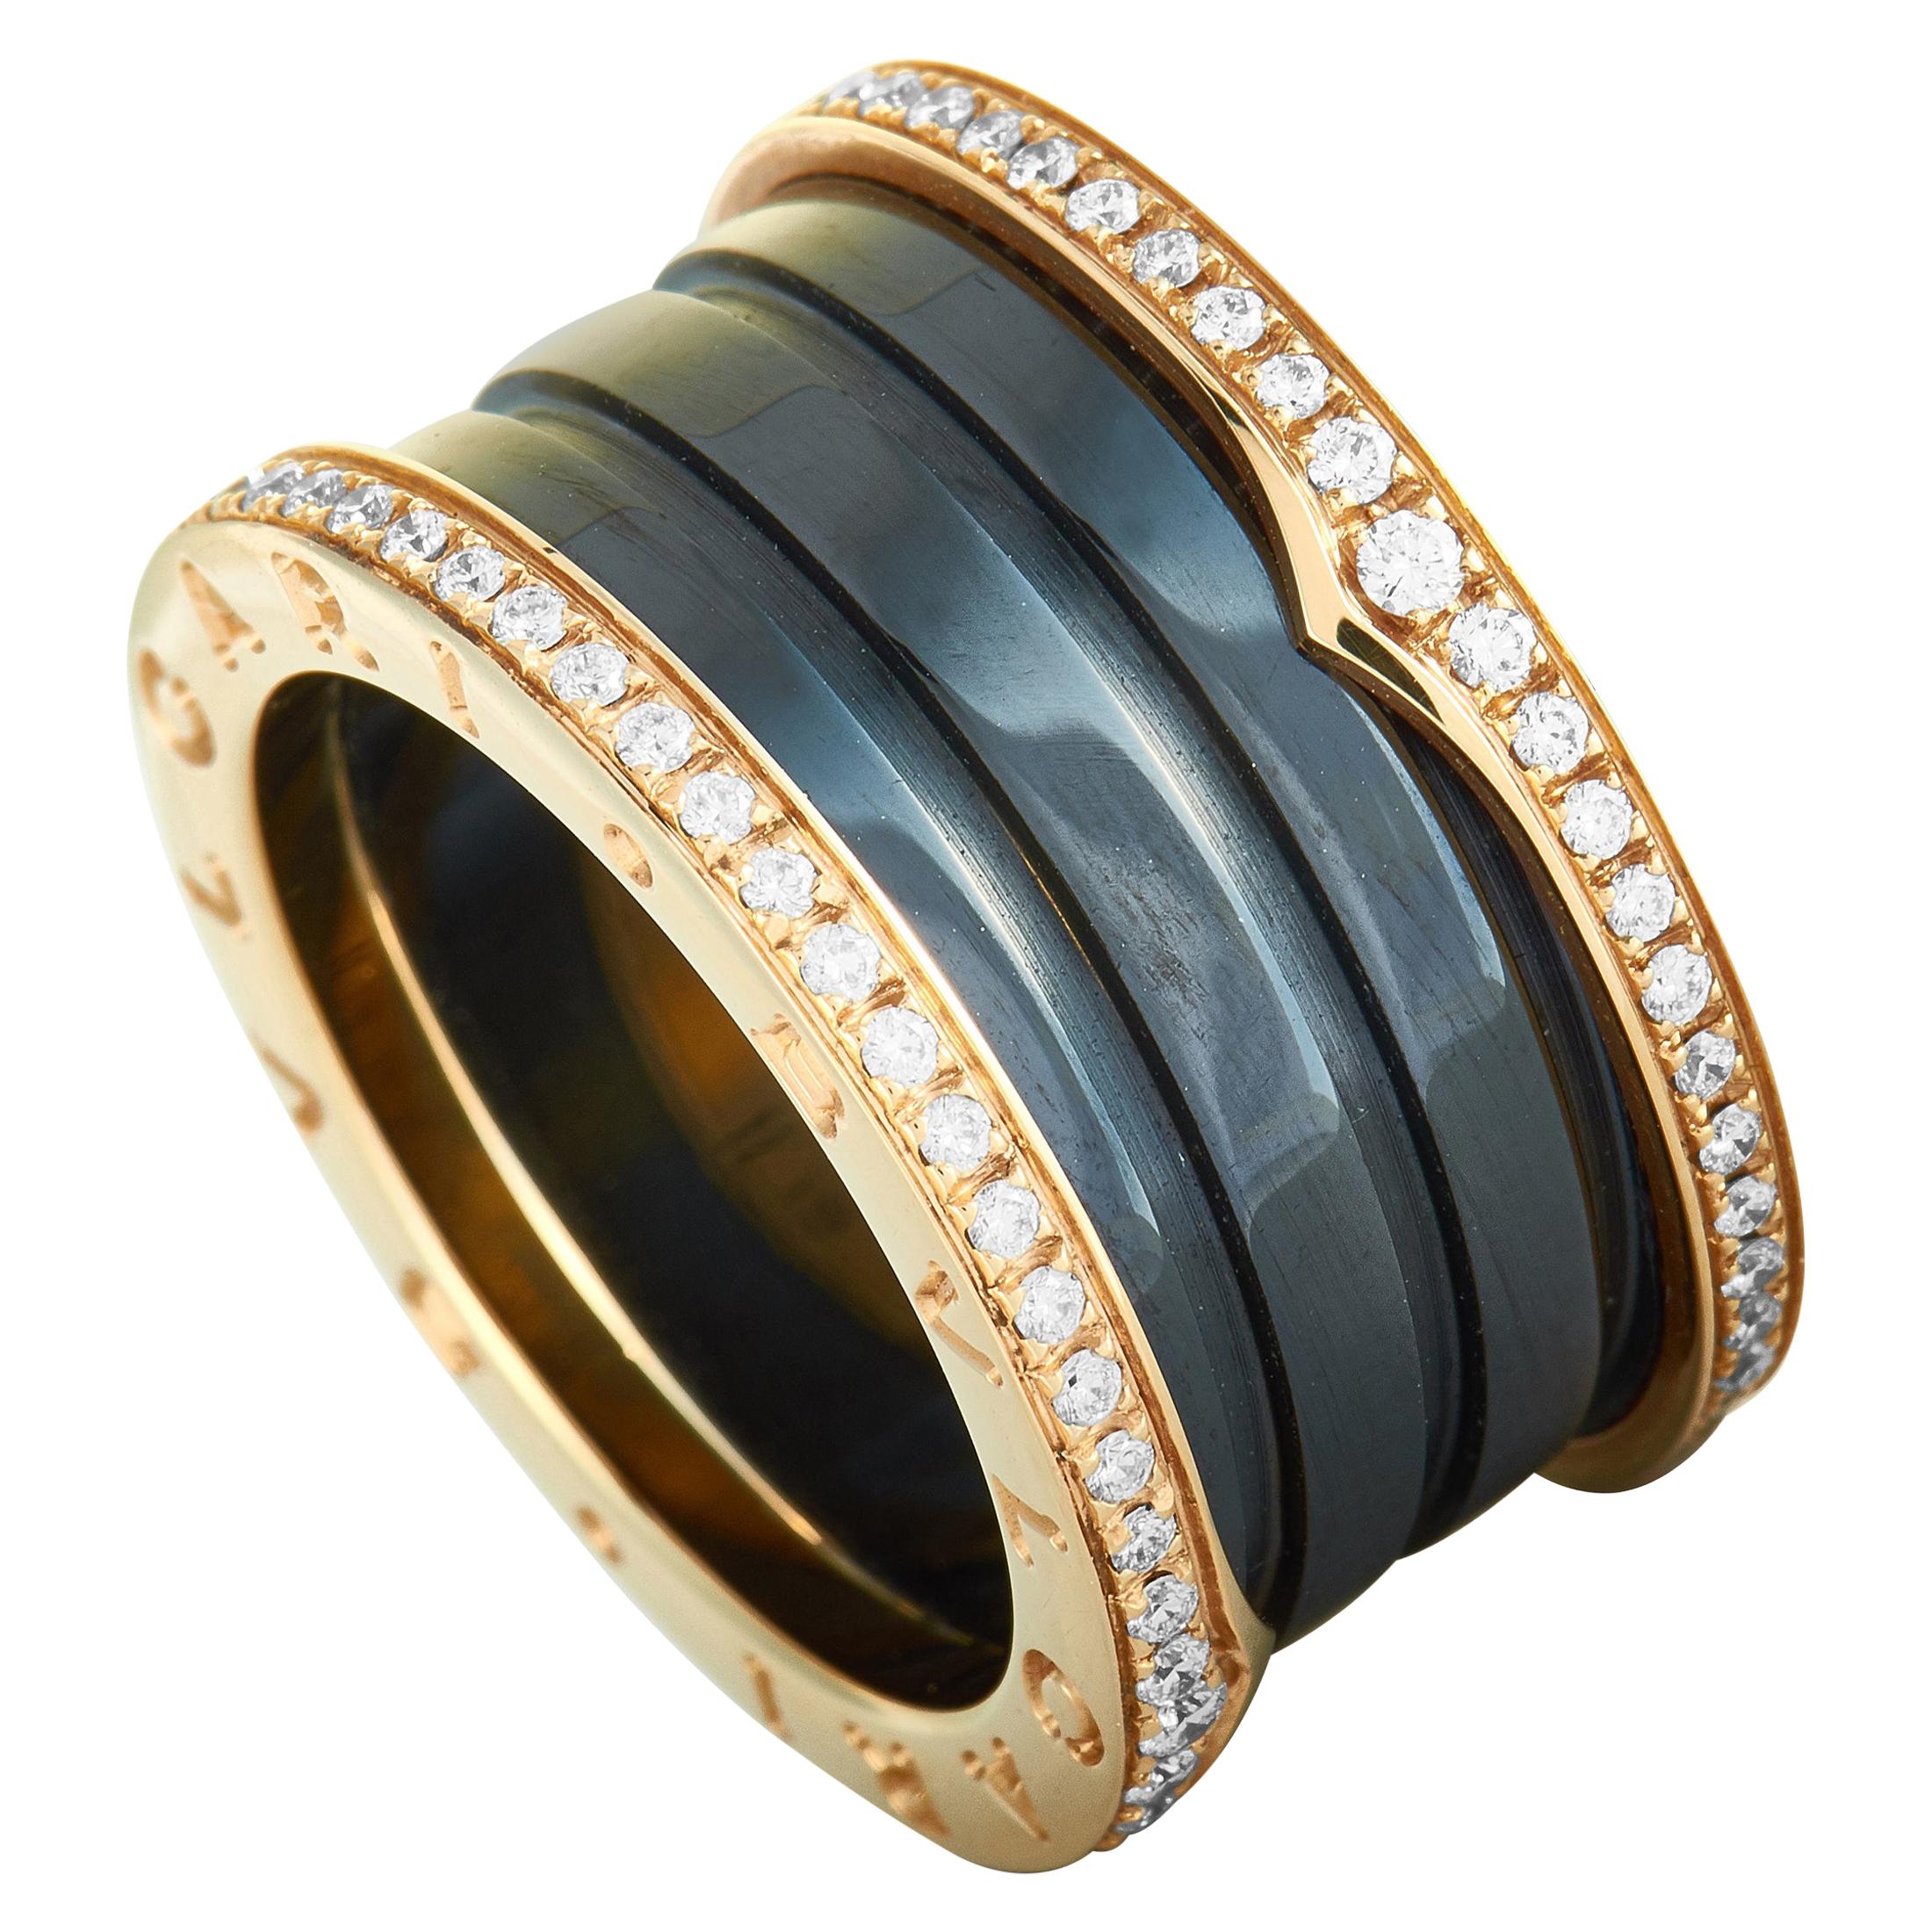 Bvlgari B.zero1 18 Karat Rose Gold and Black Ceramic Diamond Pave 4-Band Ring